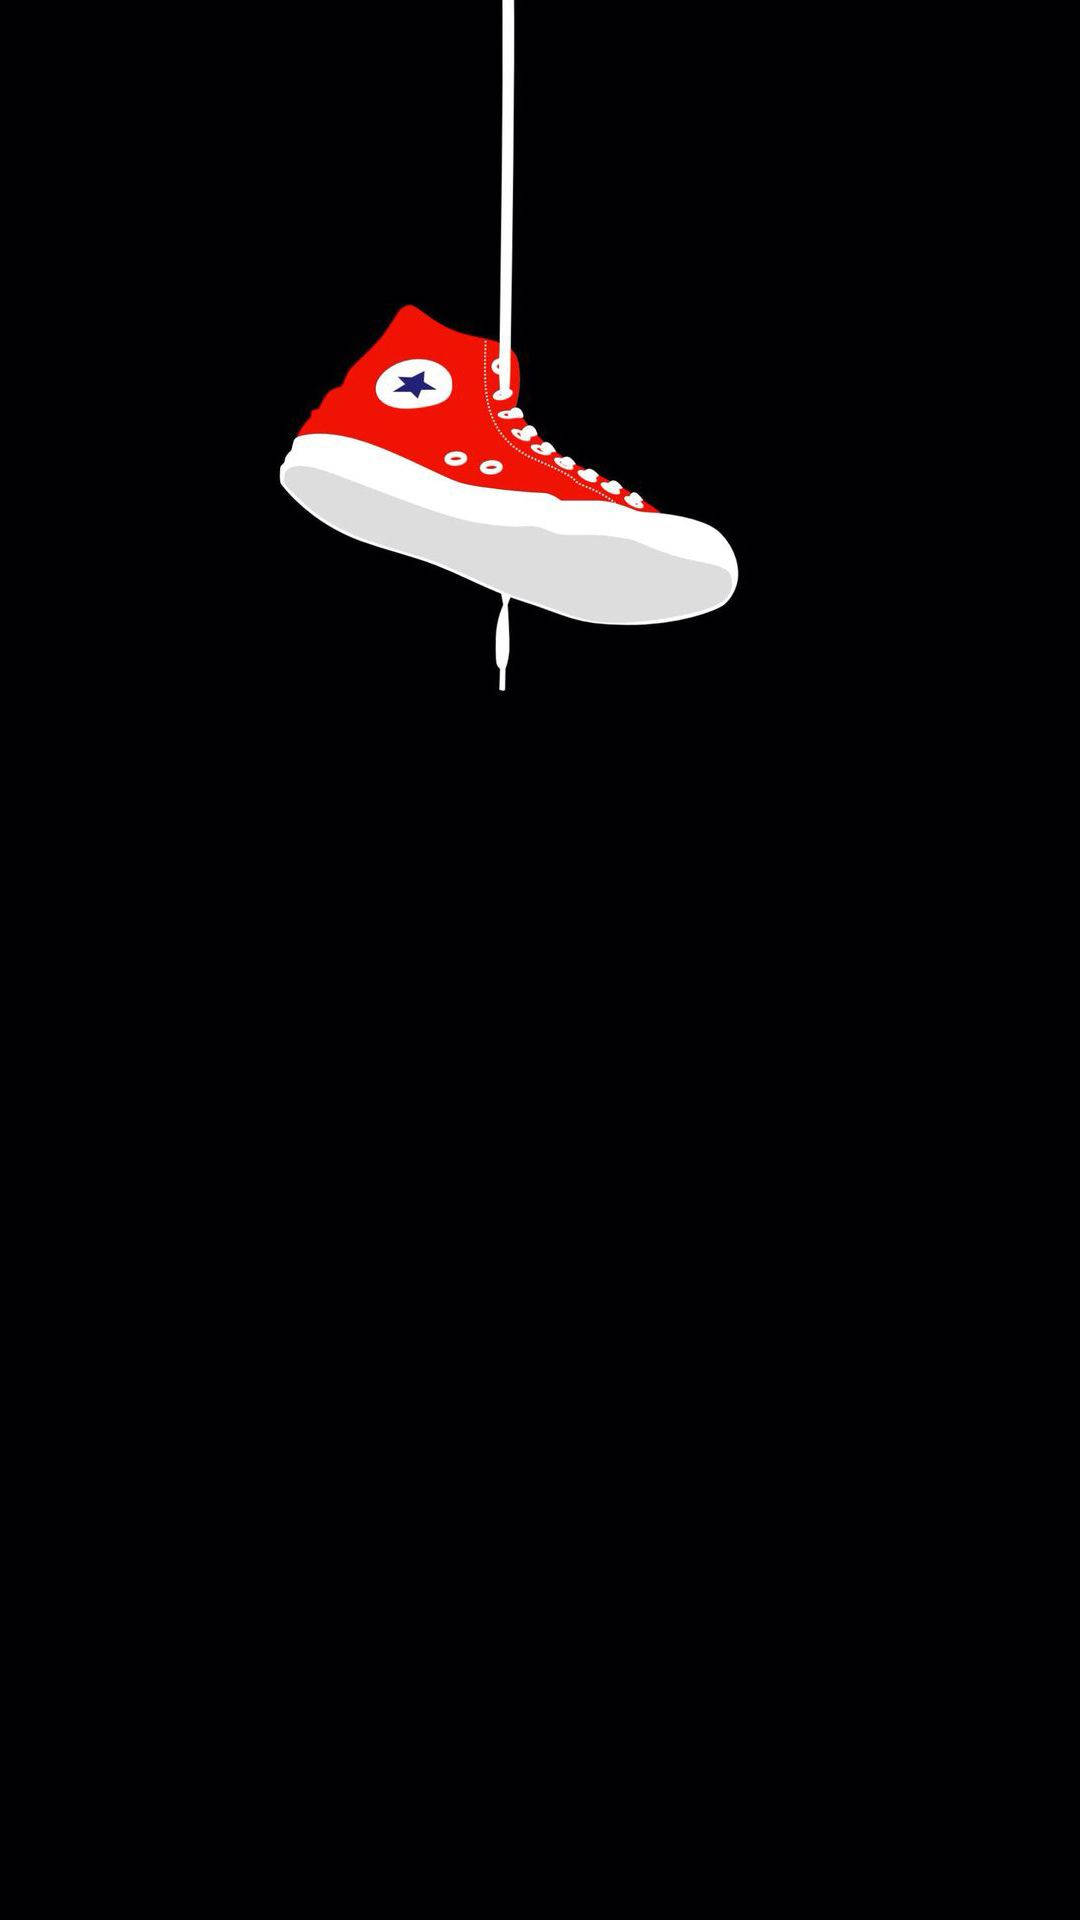 Sneaker Converse Hangs By Shoelace Wallpaper